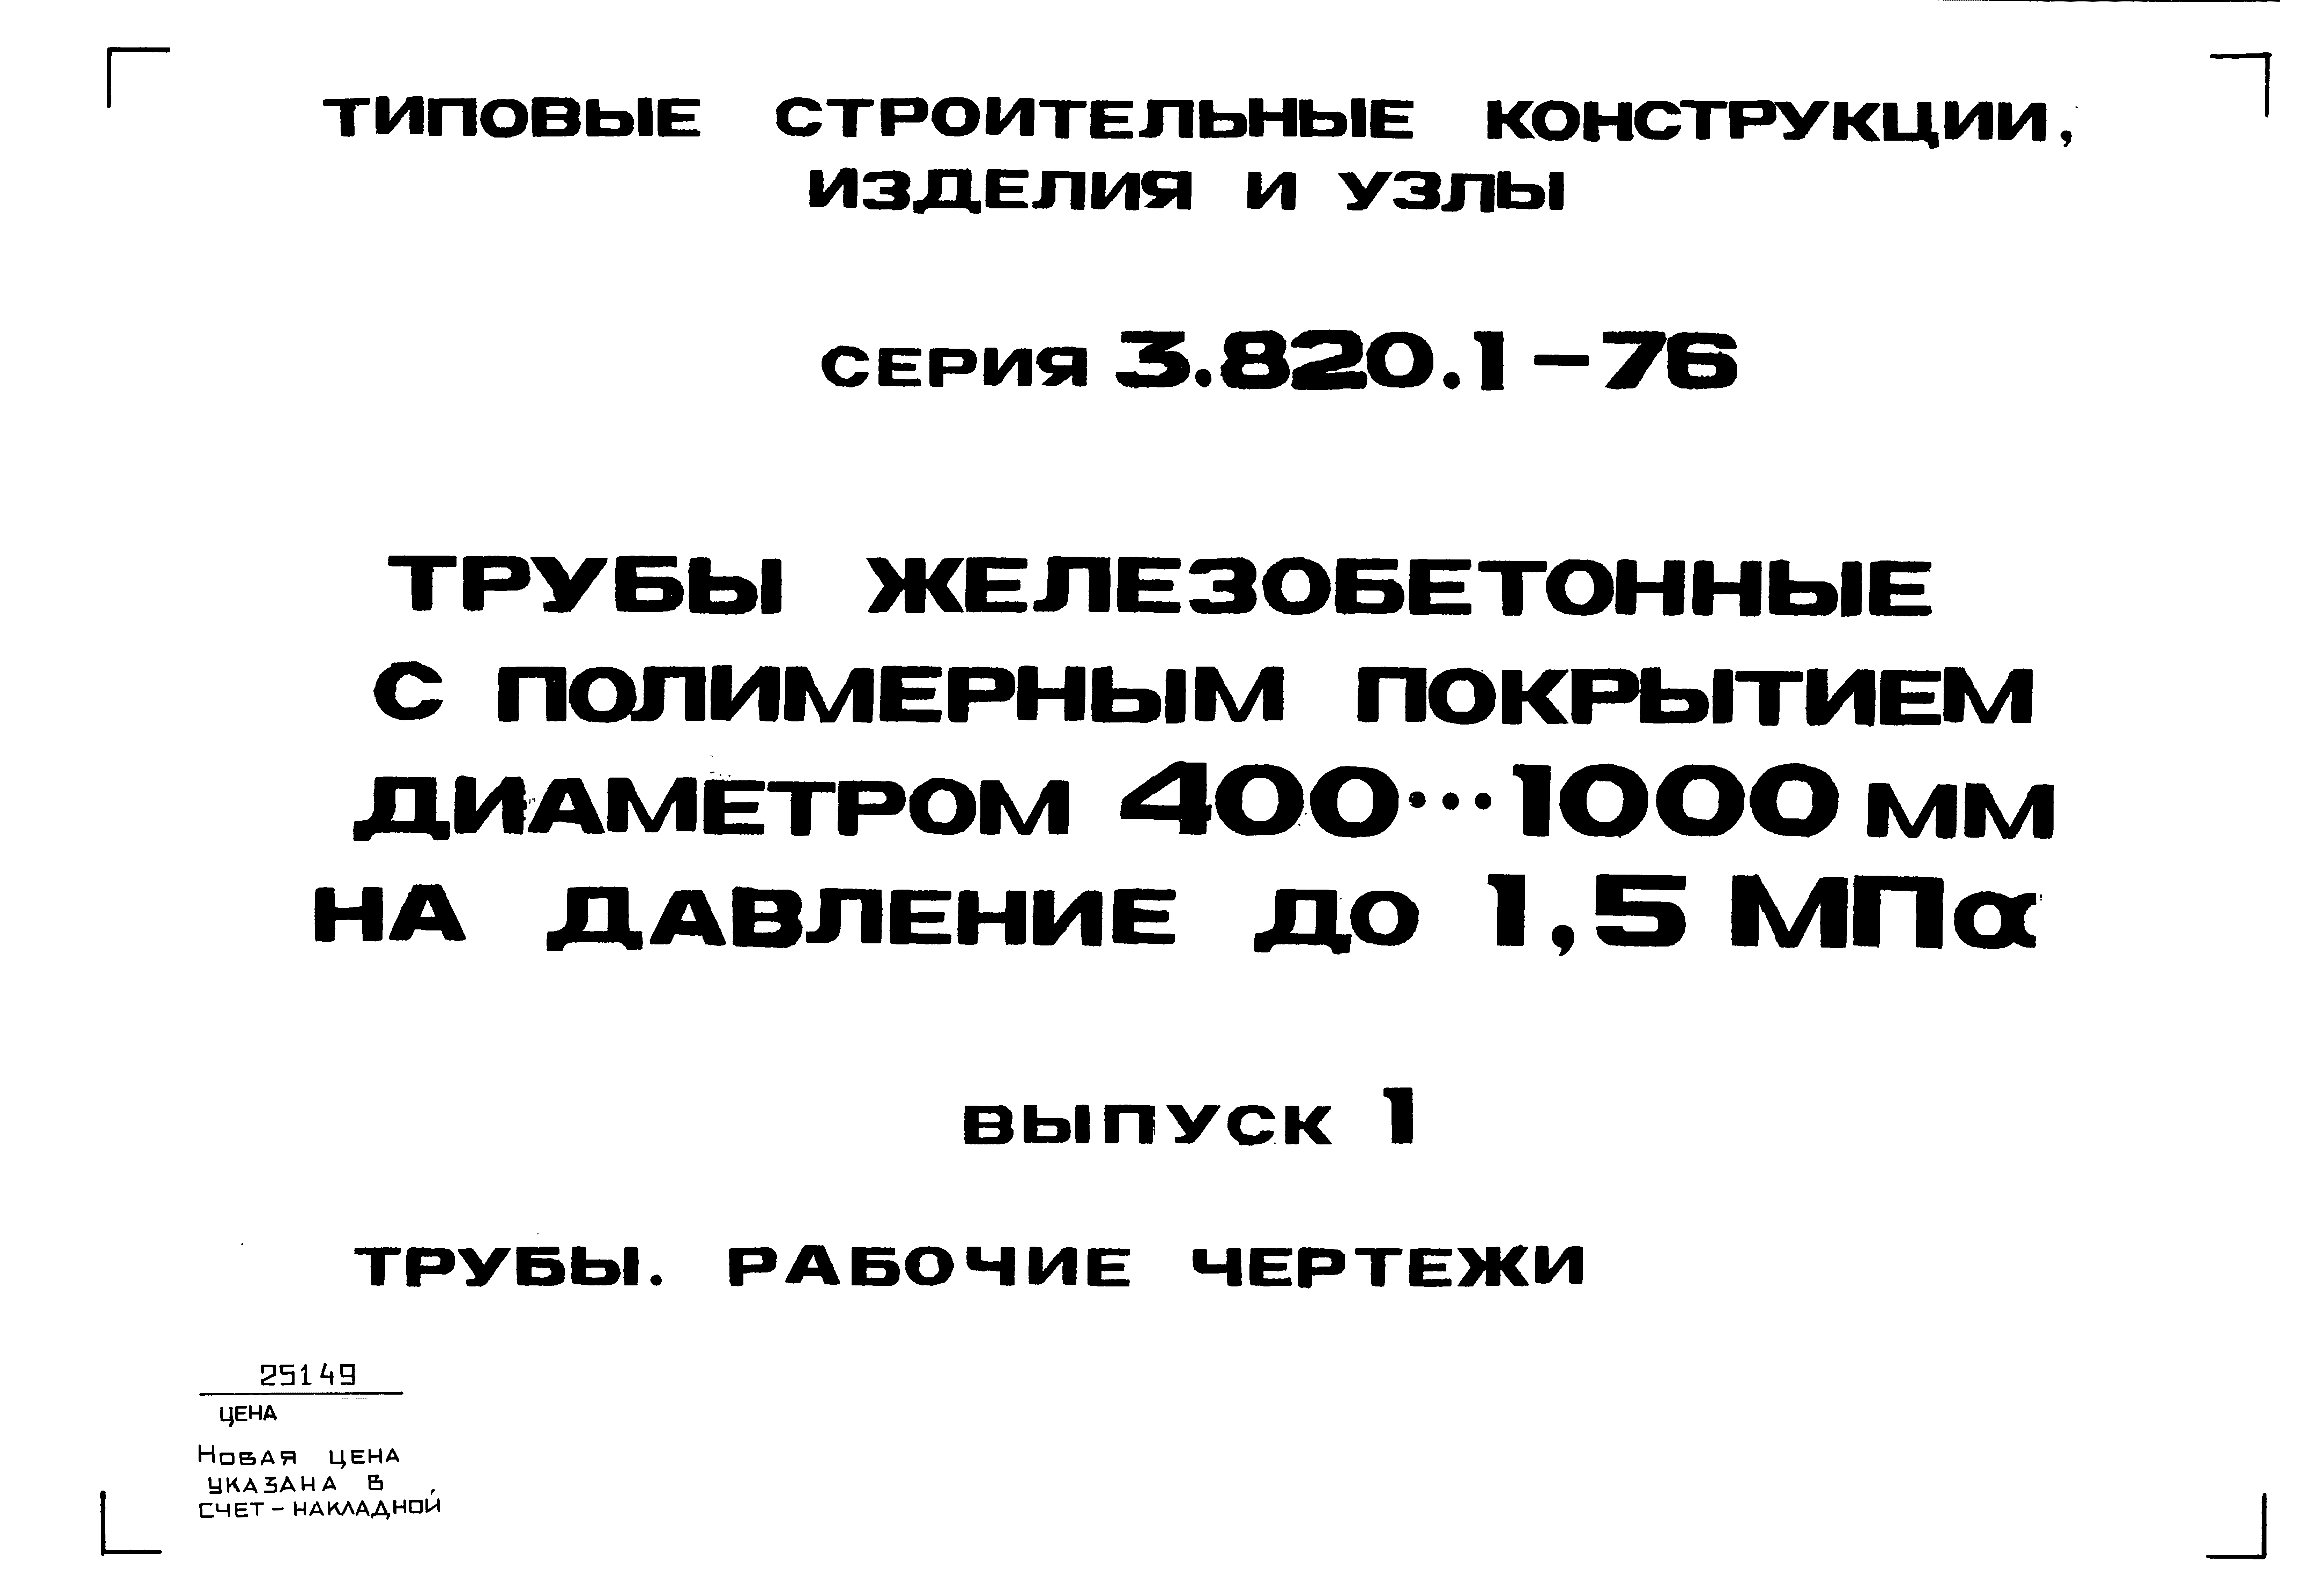 Серия 3.820.1-76